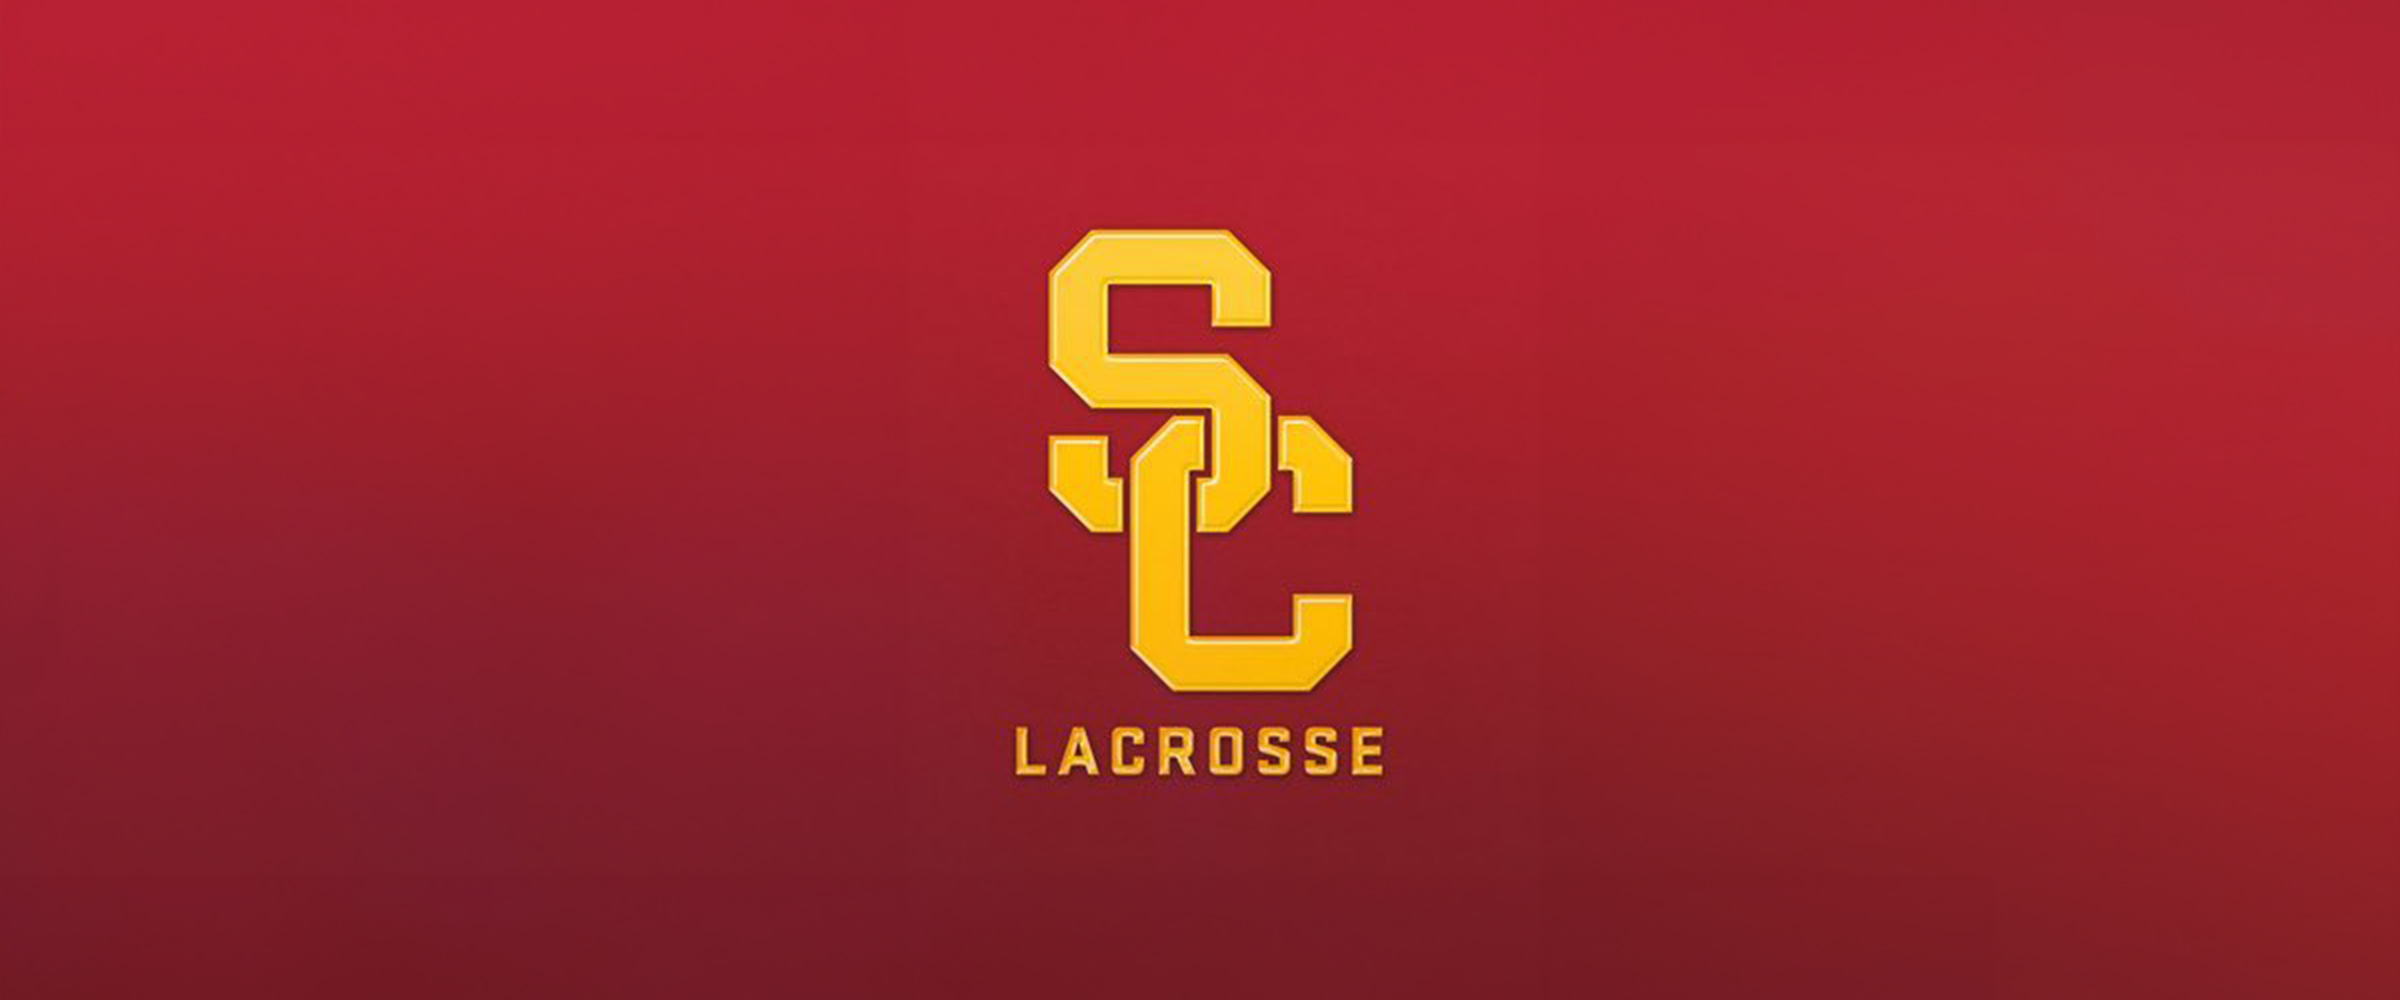 USC Women’s Lacrosse vs California